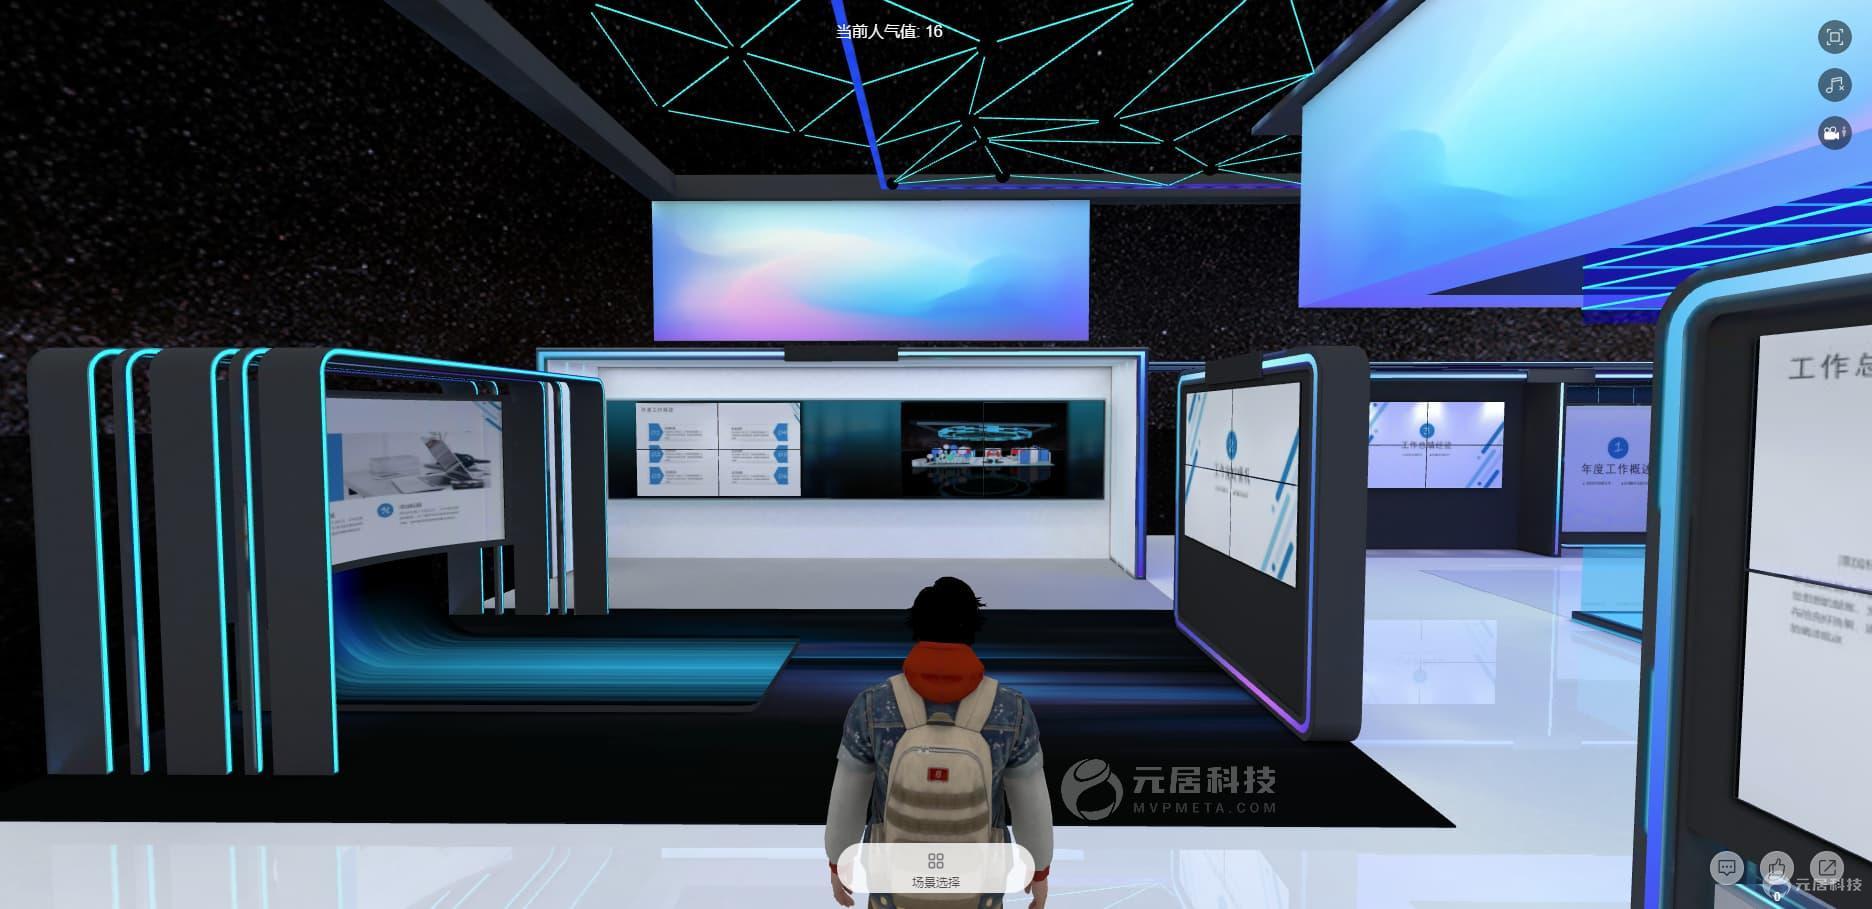 虚拟企业展馆